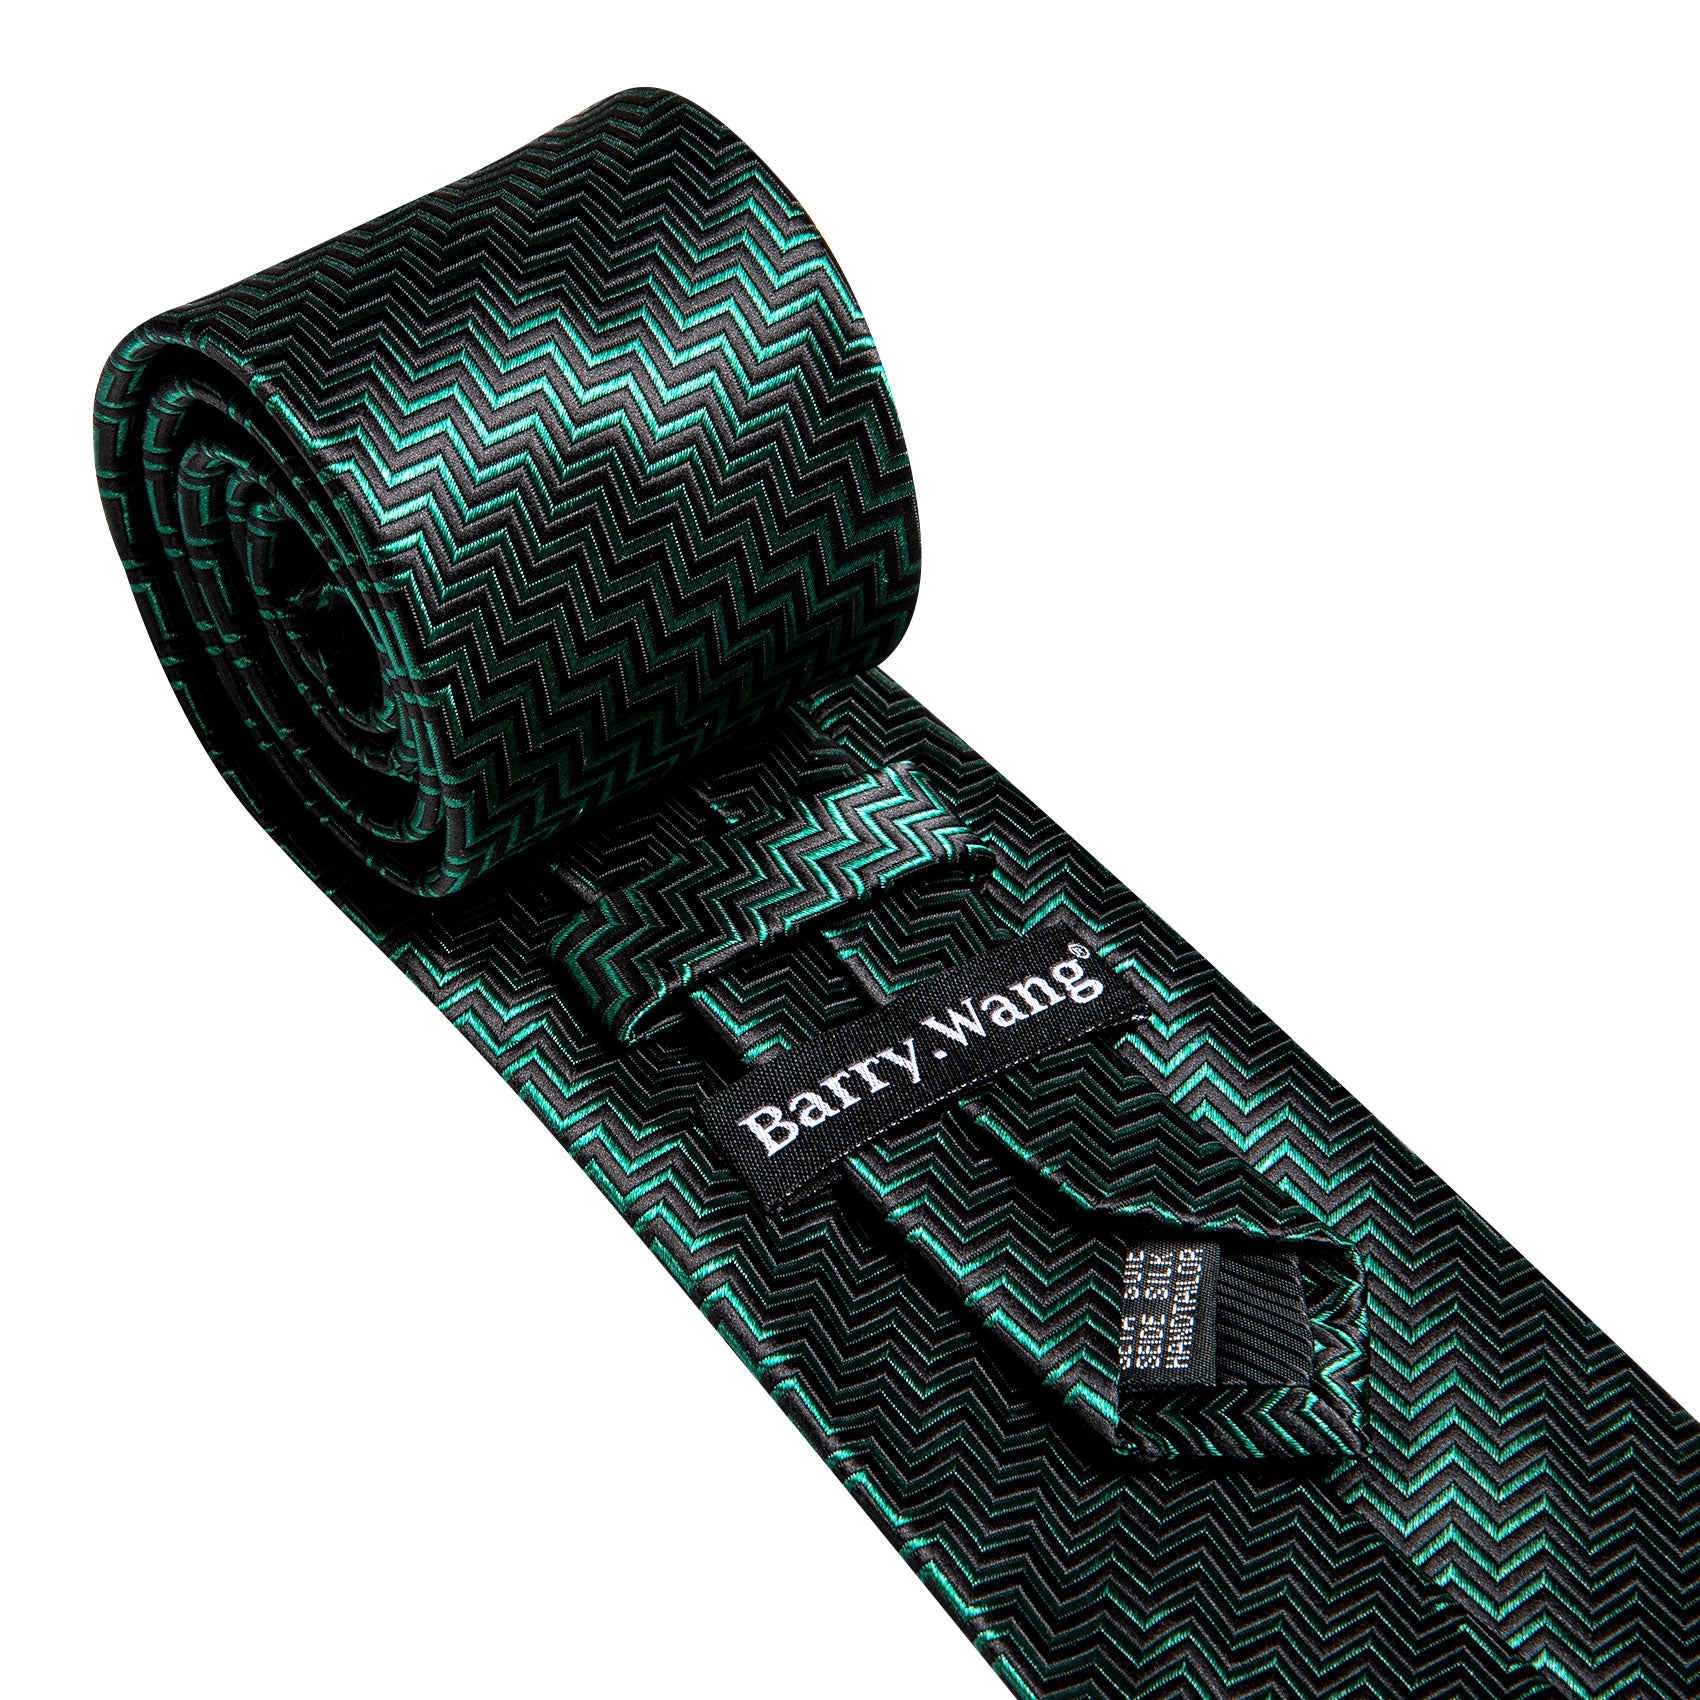 Barry Wang Green Black Ripple Silk Tie Handkerchief Cufflinks Set